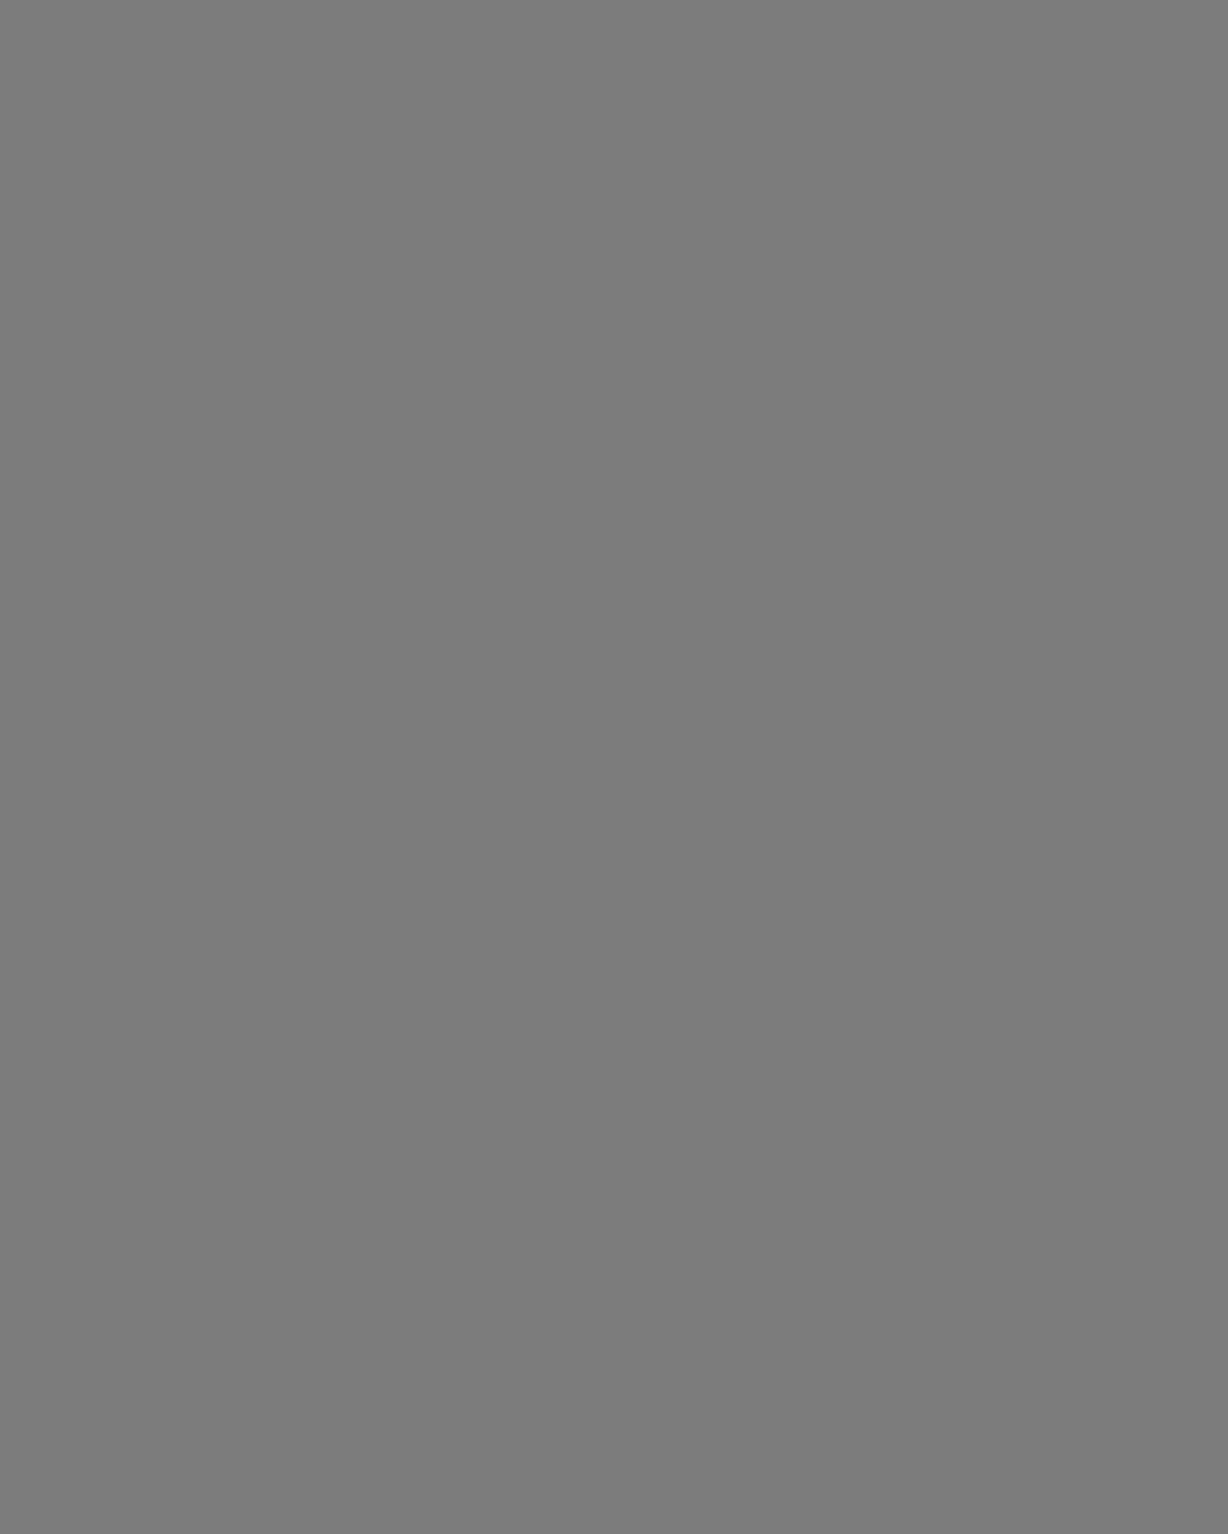 Антон Чехов в Мелихове с таксой Хиной. Московская область, 1897 год. Фотография: PA Photos / ИТАР-ТАСС / PHOTAS